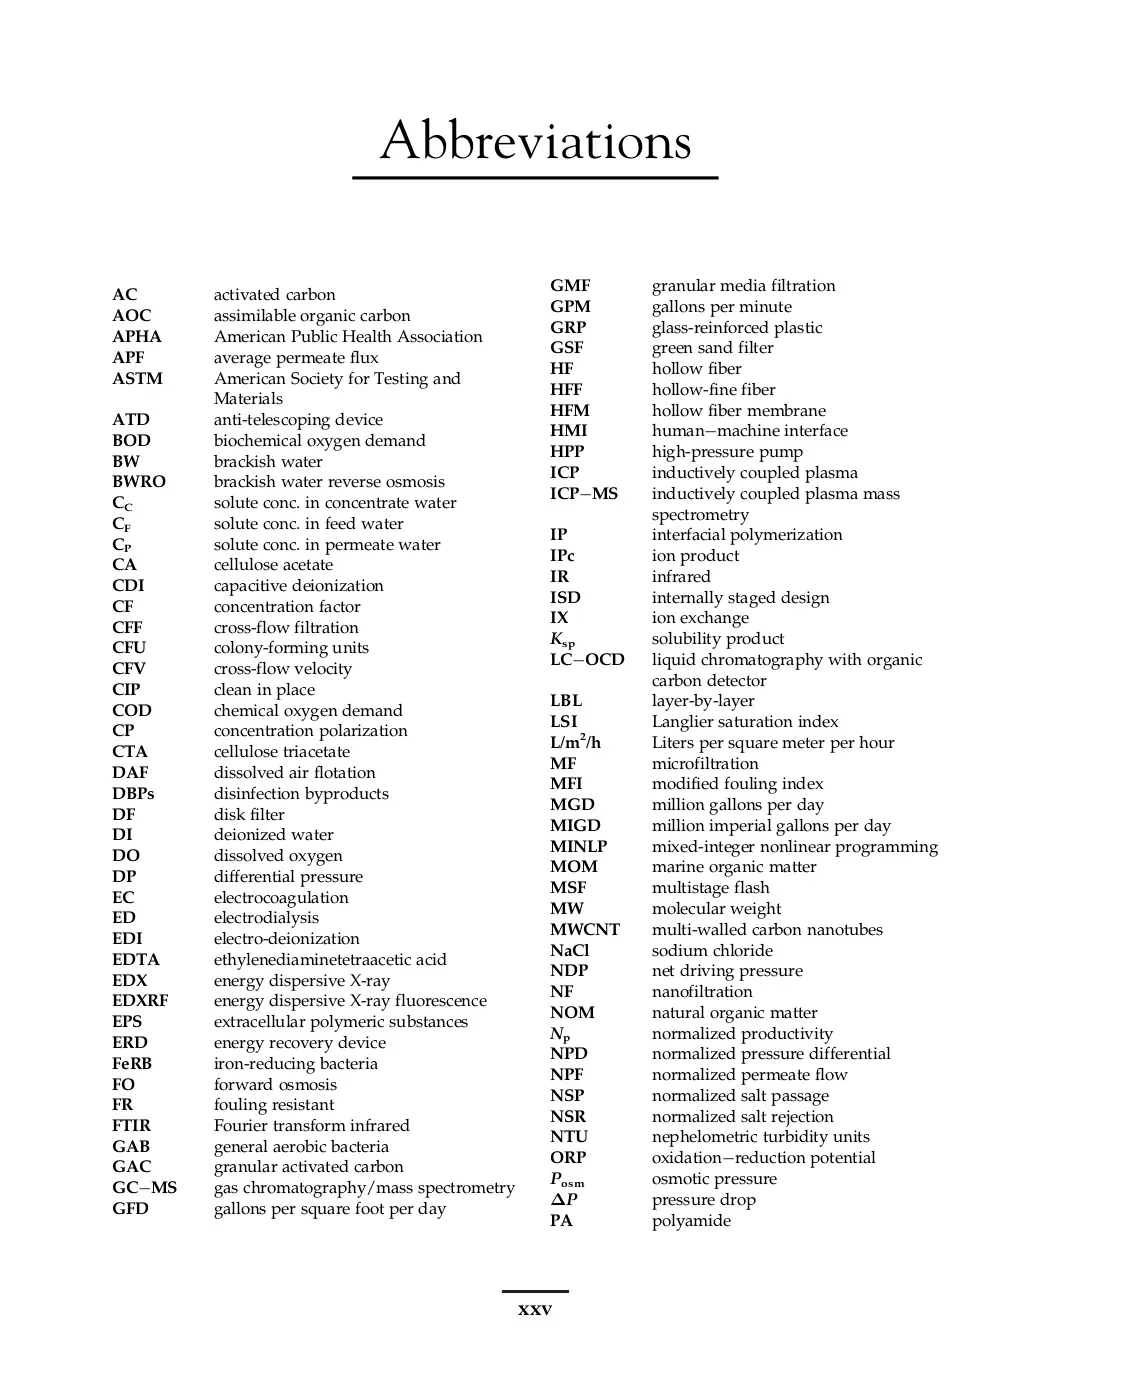 RO Abbreviations